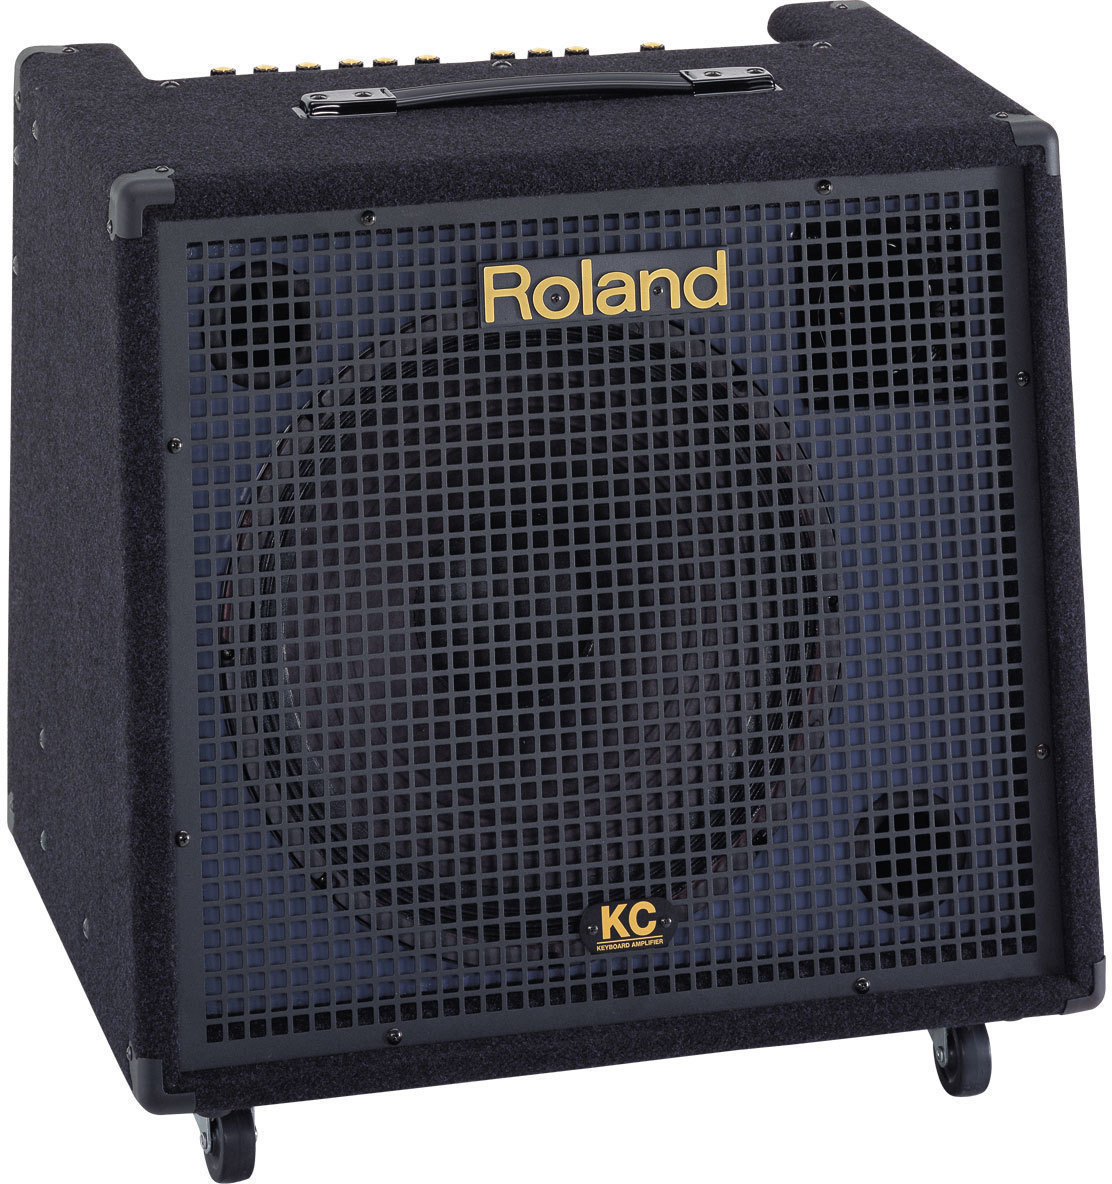 Sistem de sunet pentru claviaturi Roland KC-550